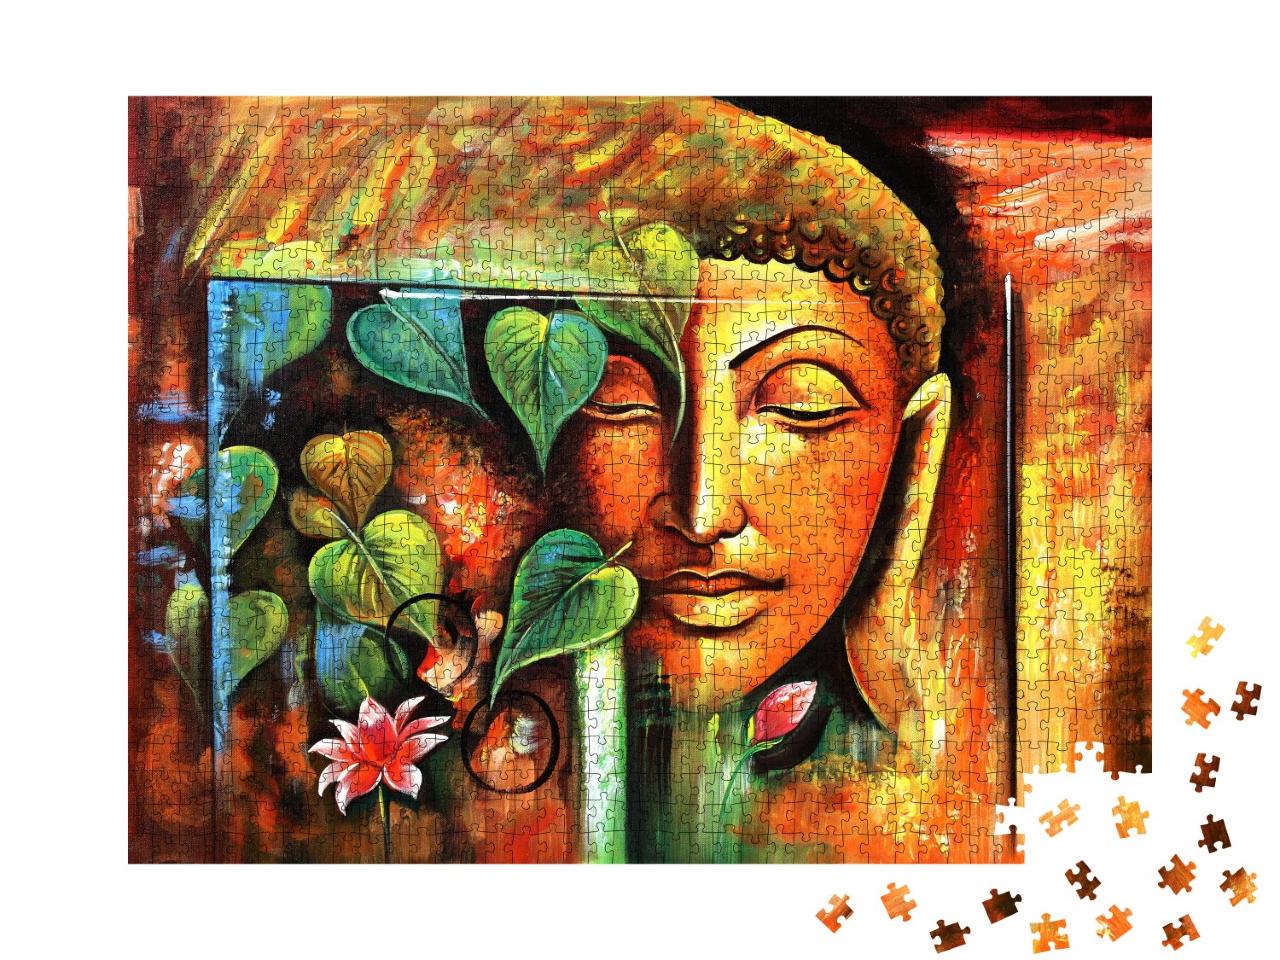 Puzzle de 1000 pièces « Bouddha »